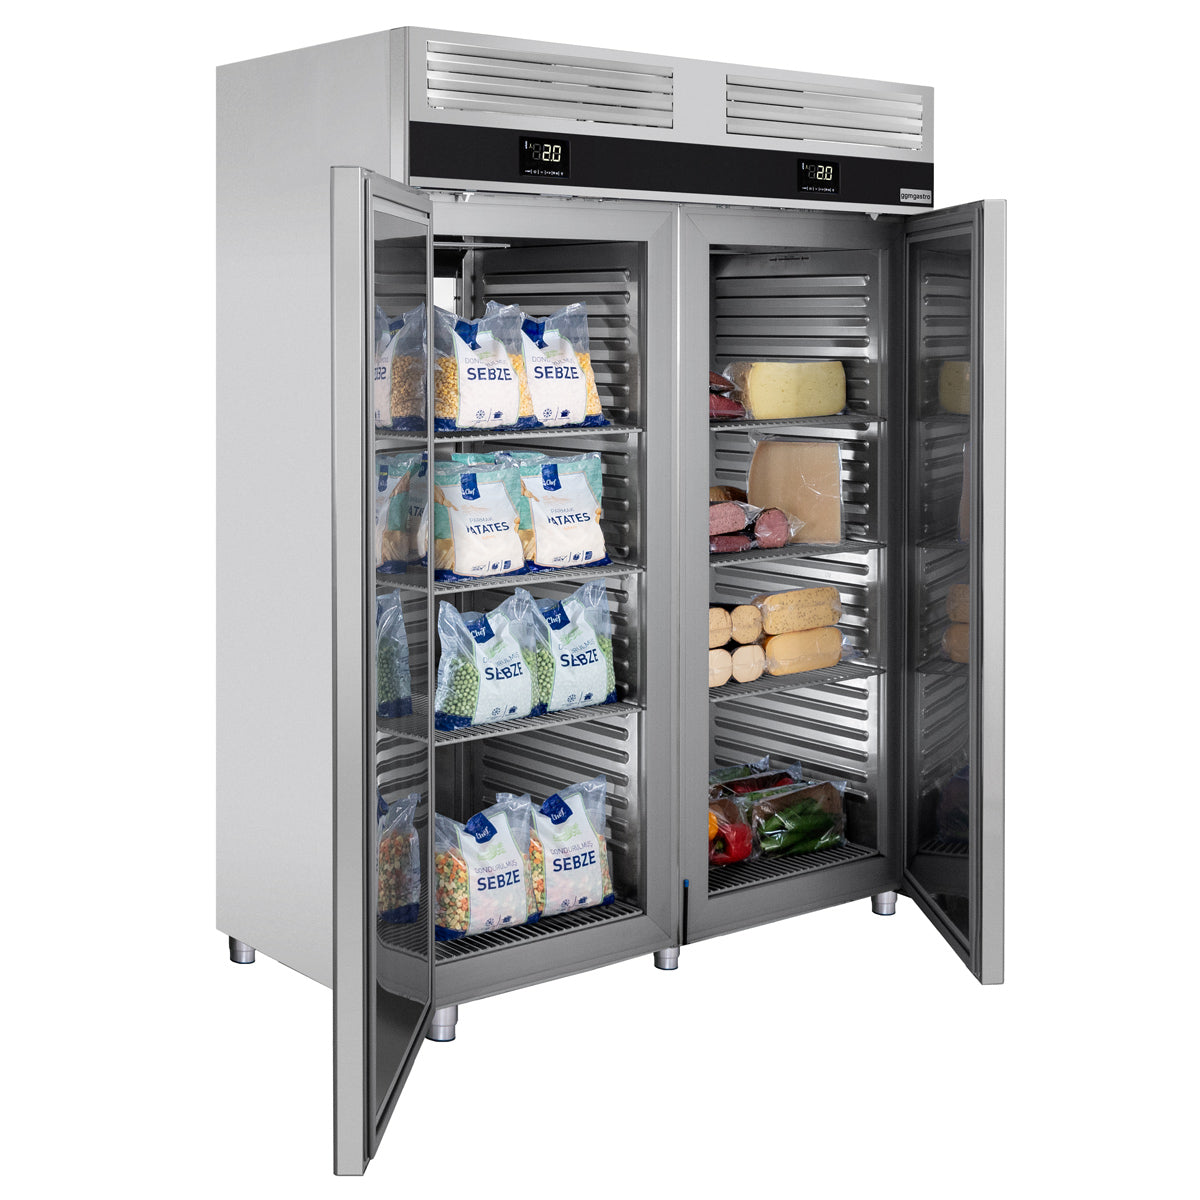 Kjøleskap og fryser kombinasjon - 1,4 x 0,81 m - 1400 liter - med 2 glassdører